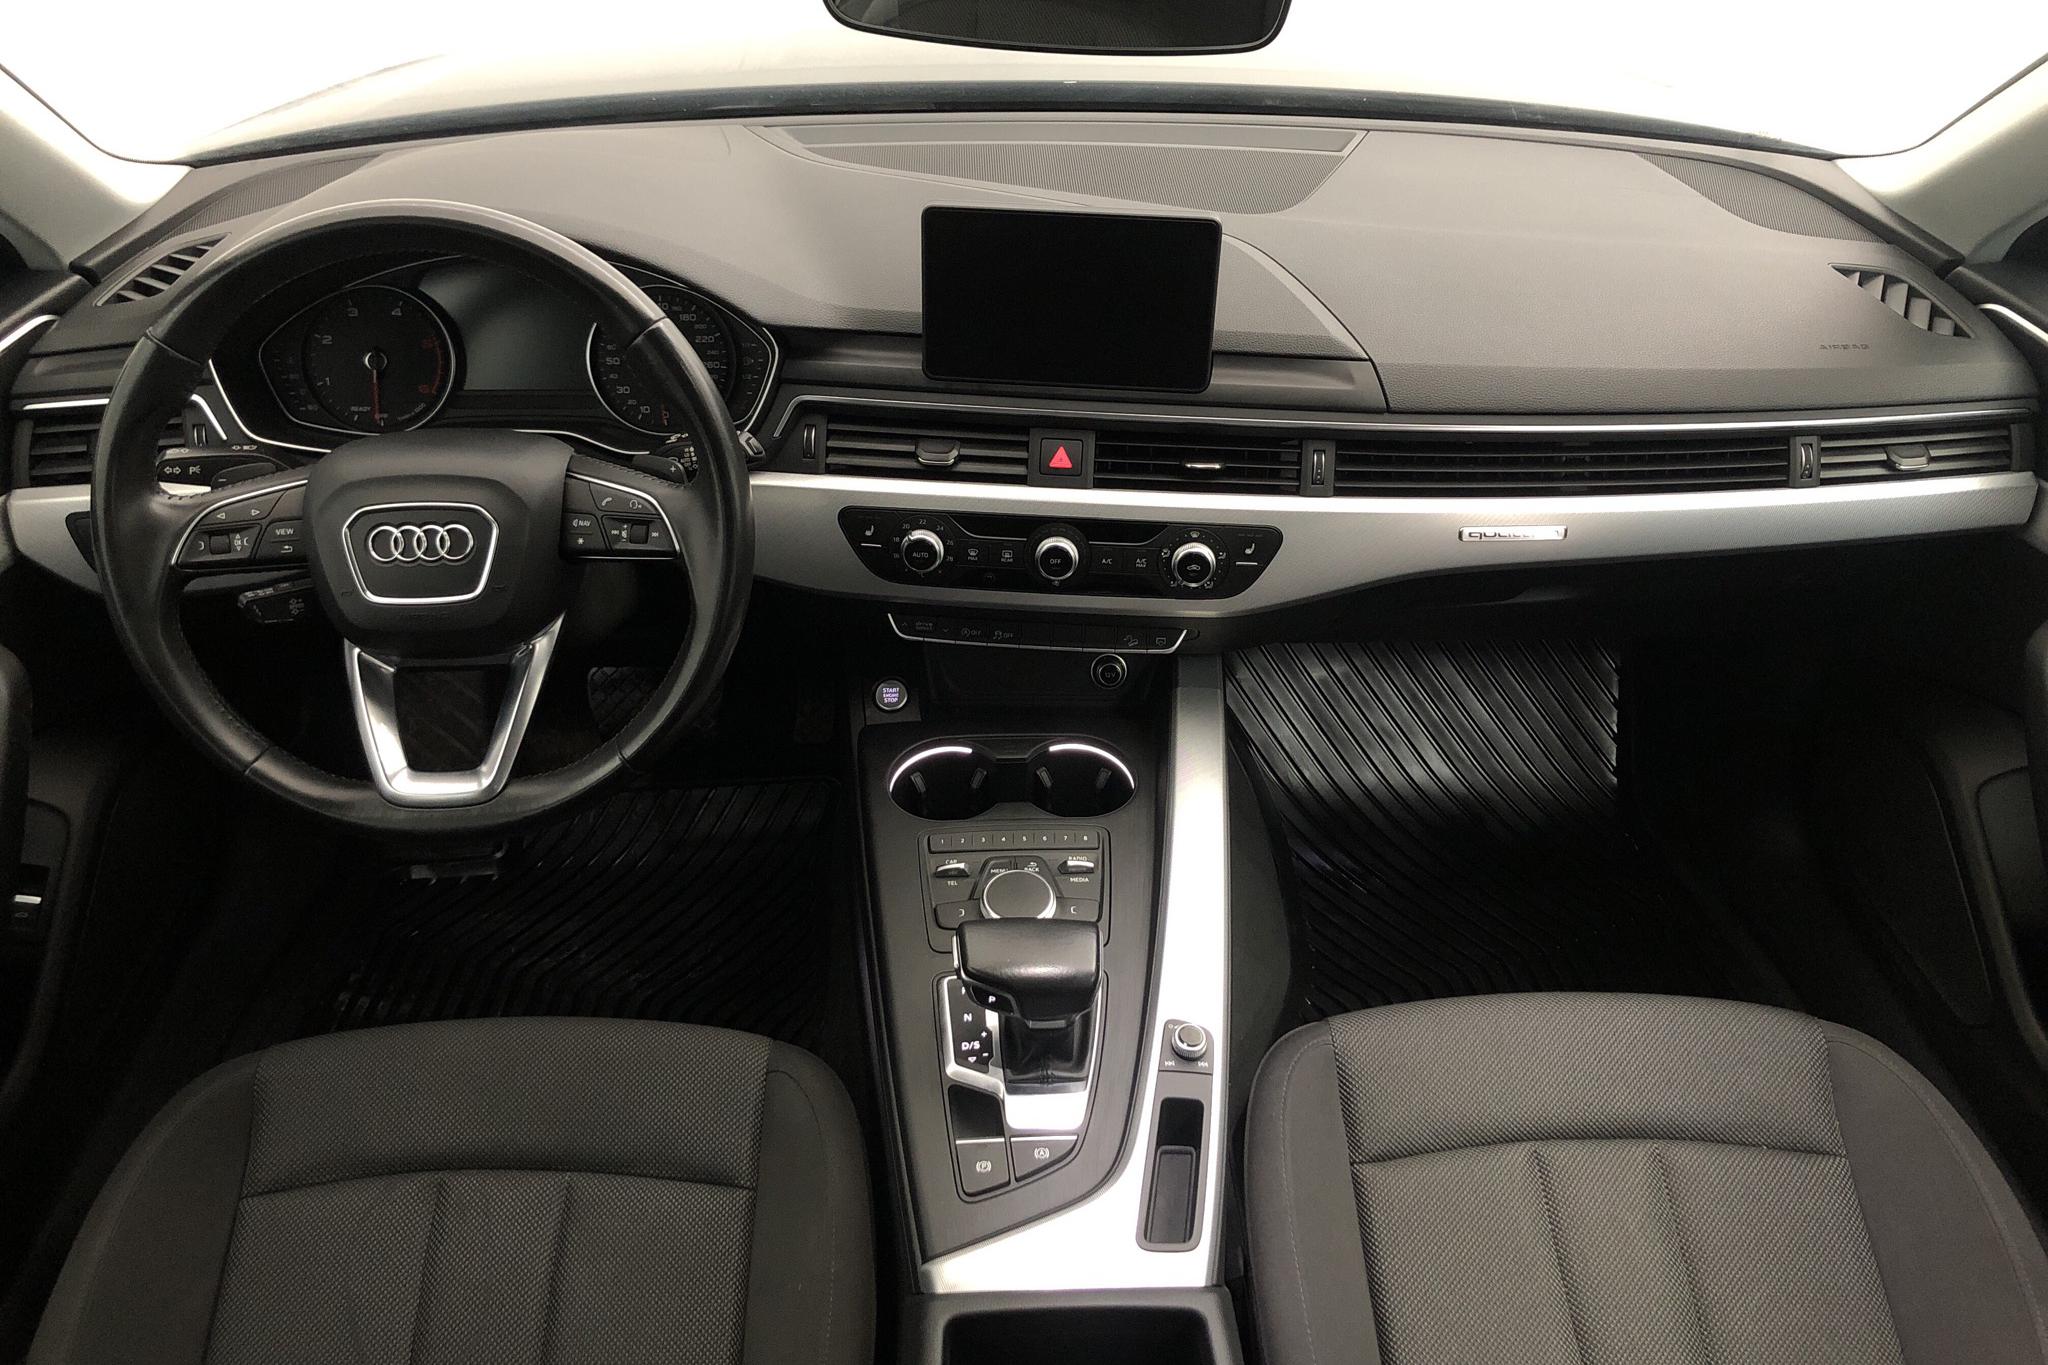 Audi A4 Allroad 2.0 TDI quattro (190hk) - 11 804 mil - Automat - svart - 2017